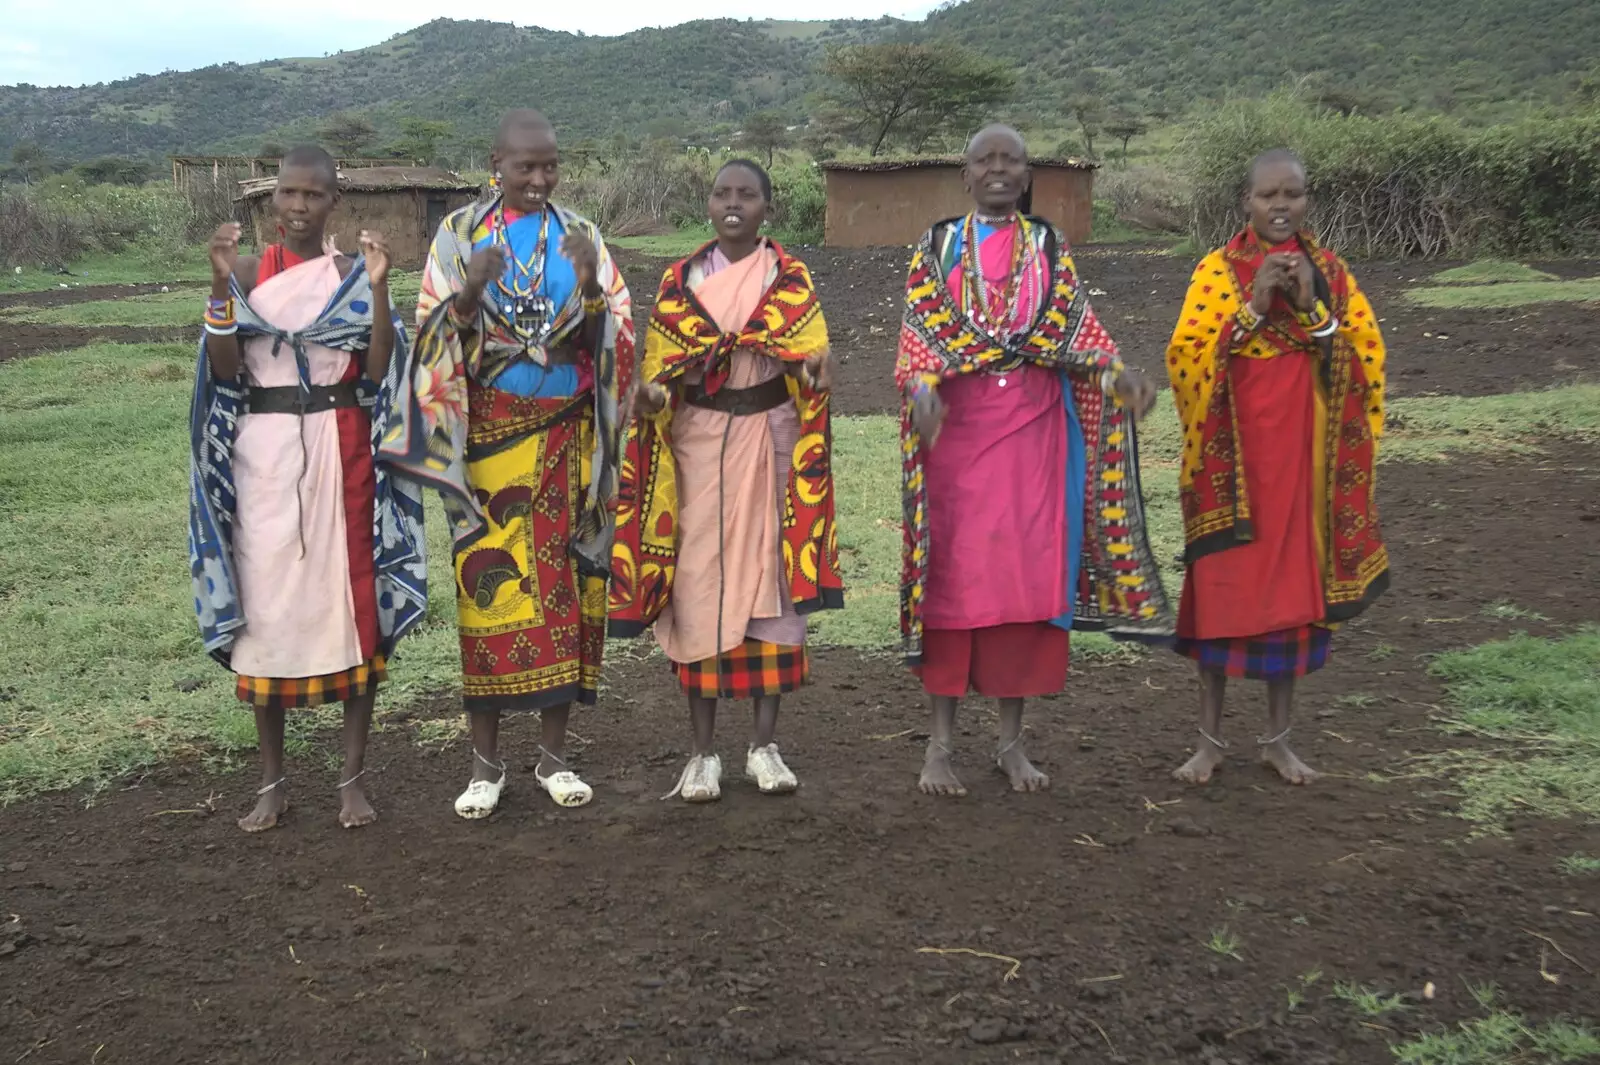 Some Maasai women perform a melancholy wedding song, from Maasai Mara Safari and a Maasai Village, Ololaimutia, Kenya - 5th November 2010